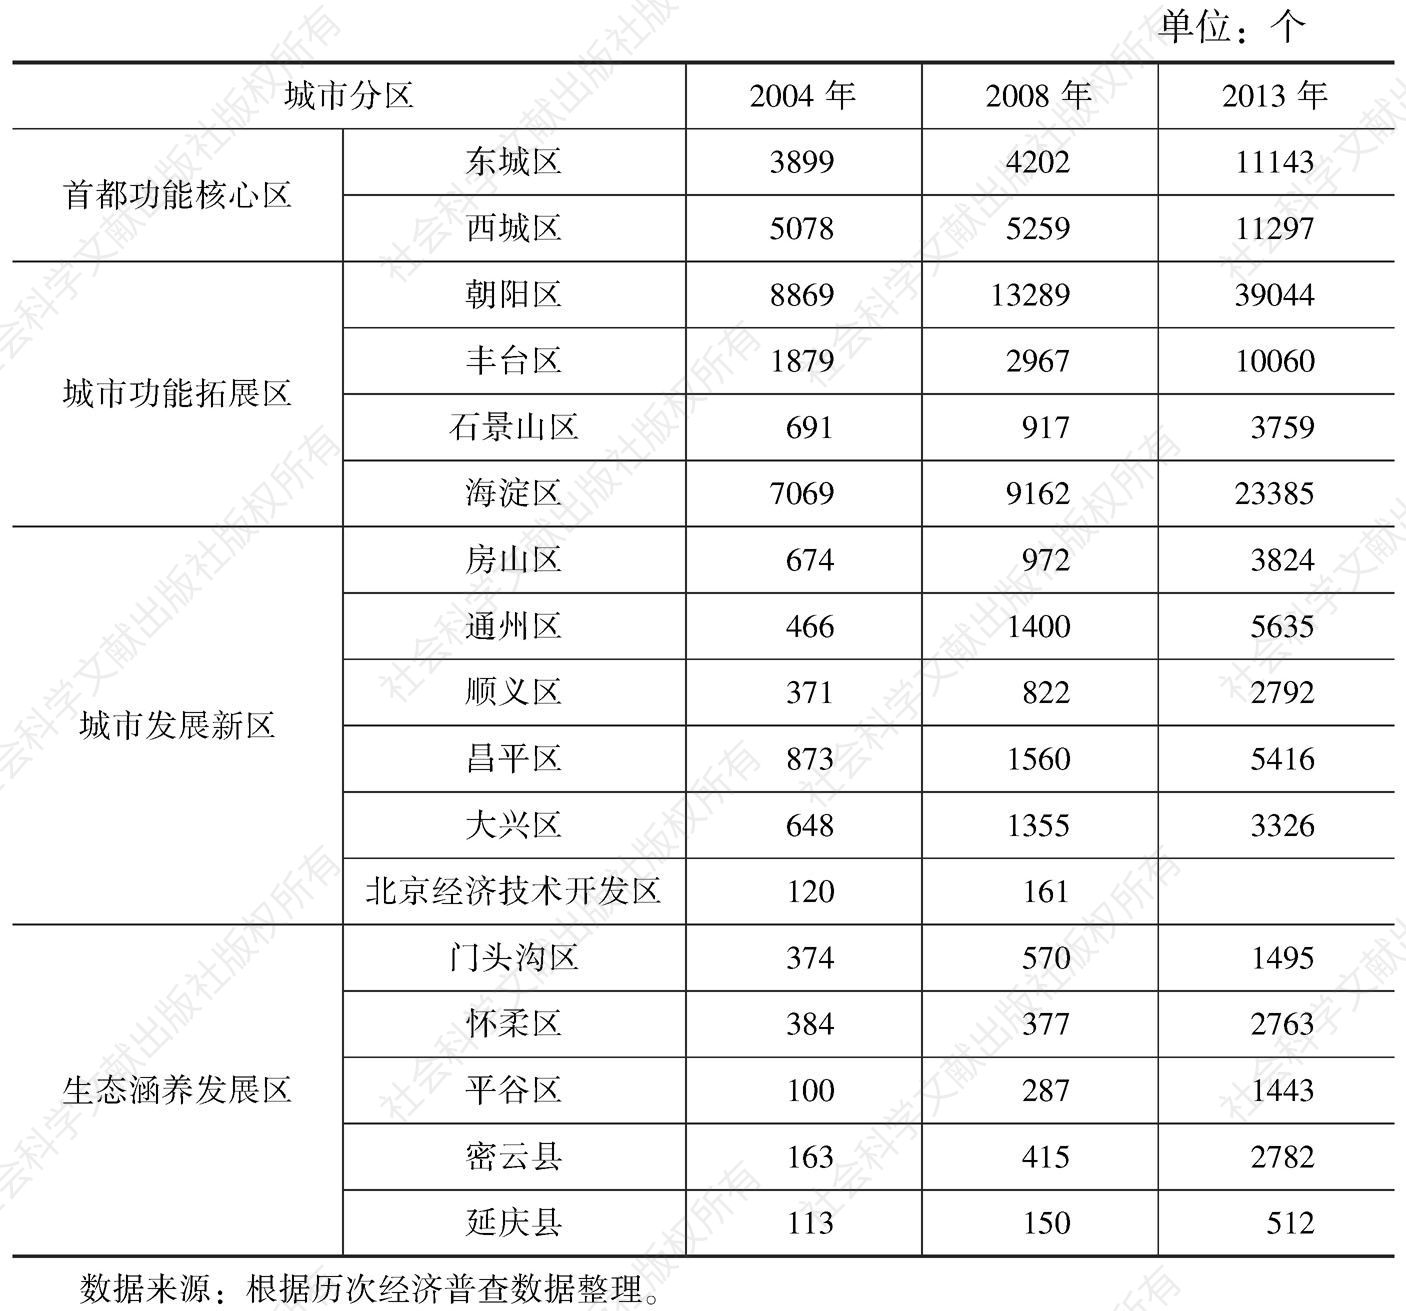 表5-2 北京市各区县租赁与商务服务业企业数